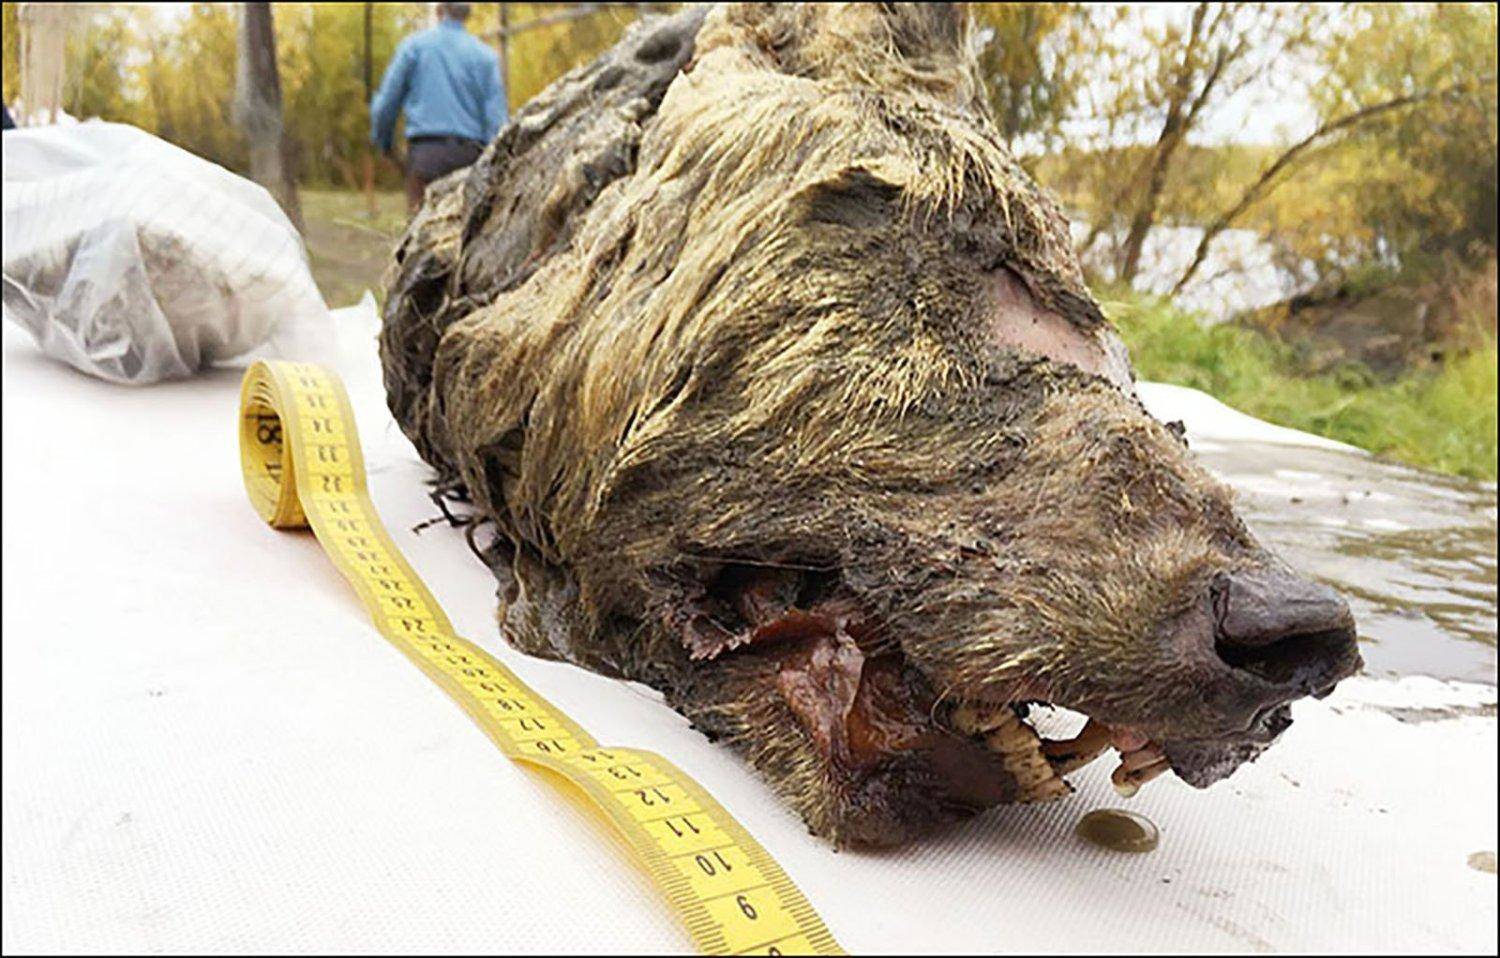  वैज्ञानिकों ने 40 हजार साल पहले के भेड़िए का सिर मिलने का किया दावा  